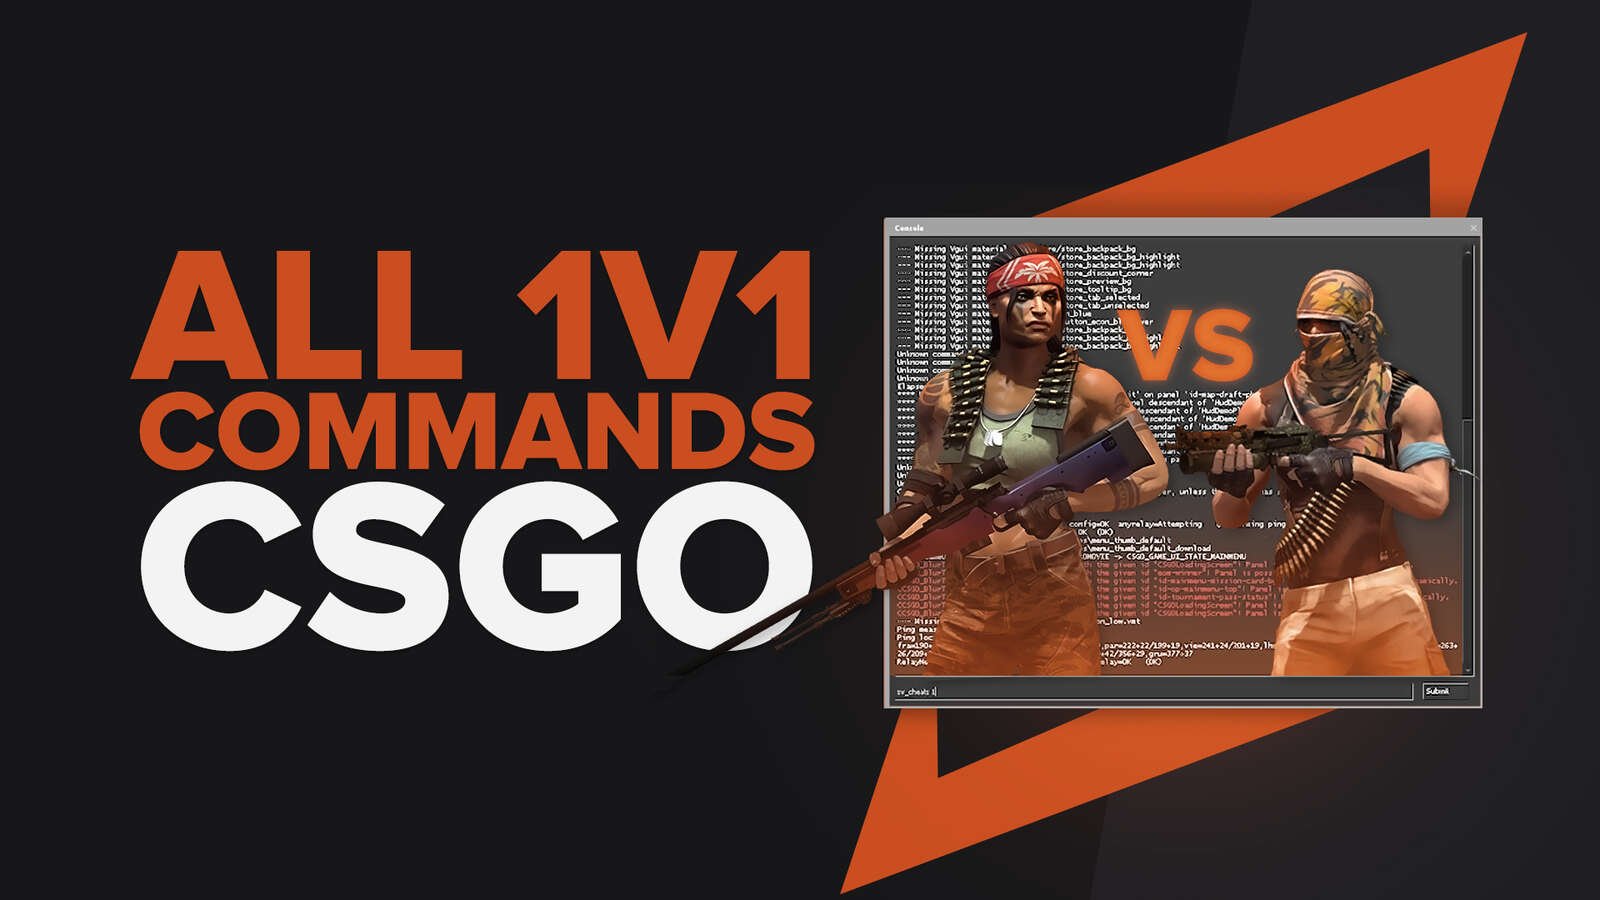 All 1v1 Commands in CS2 (CSGO)